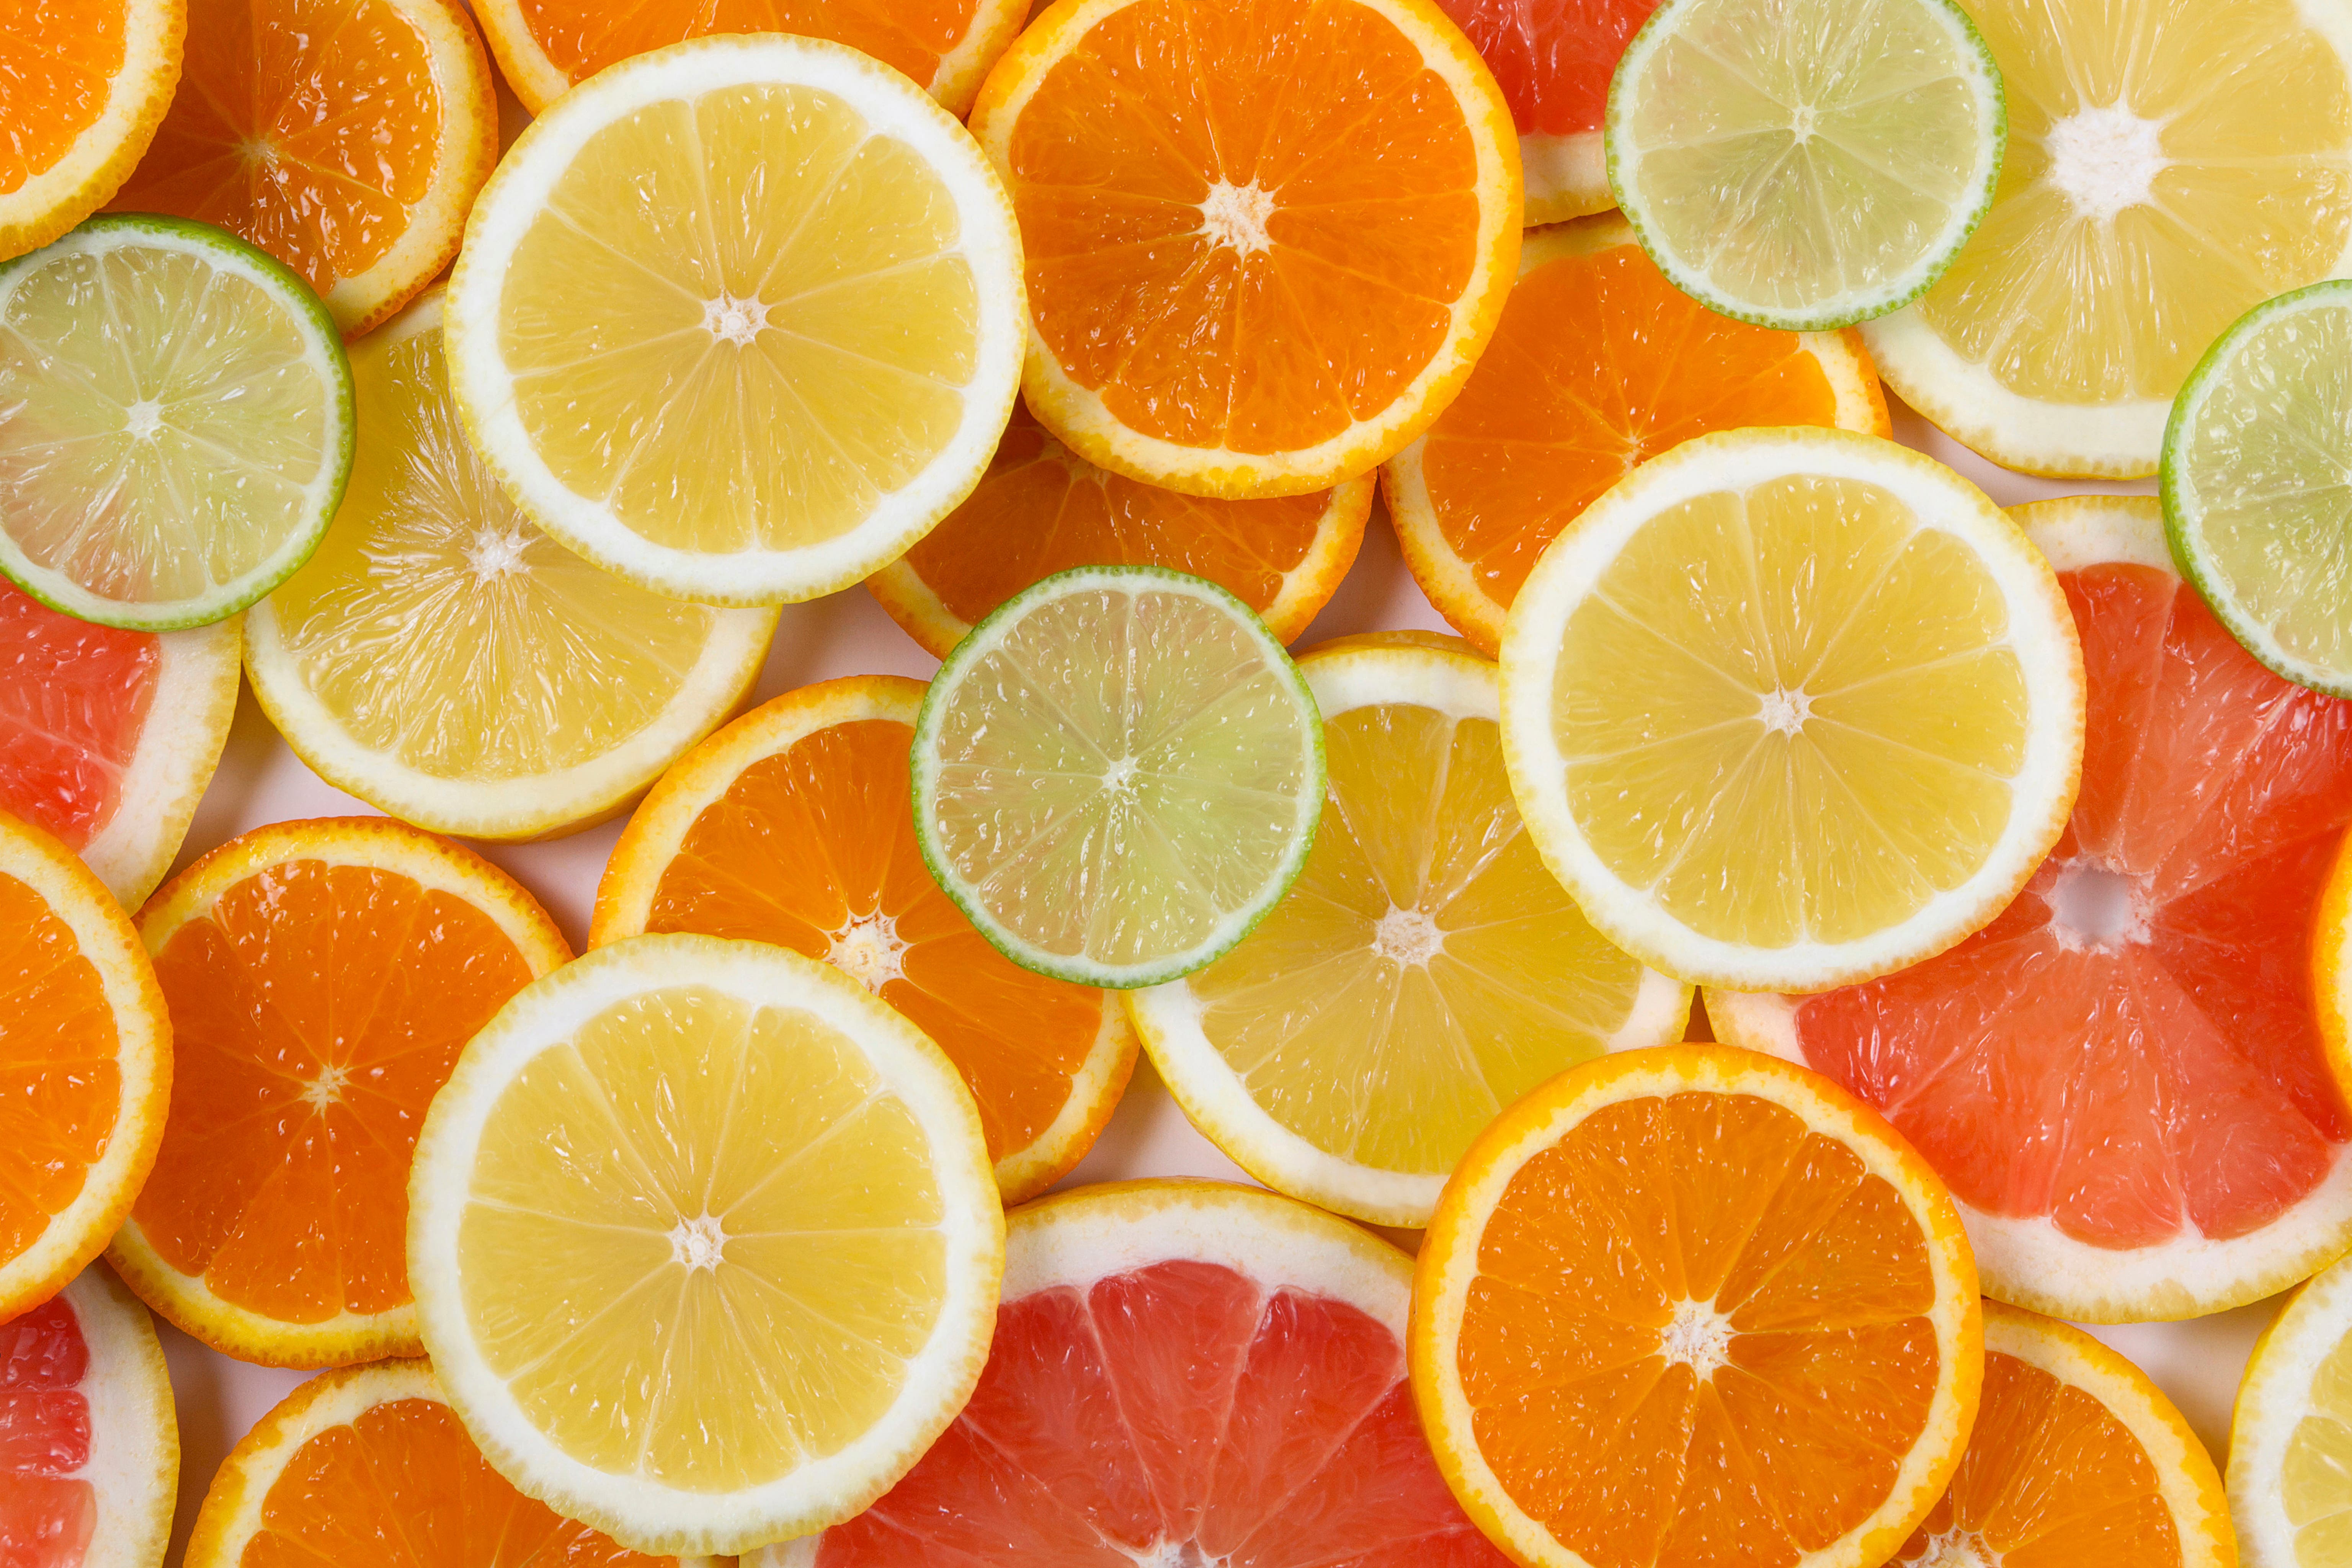 Farbenfrohe Vitaminspender - Jetzt sind die italienischen Orangen